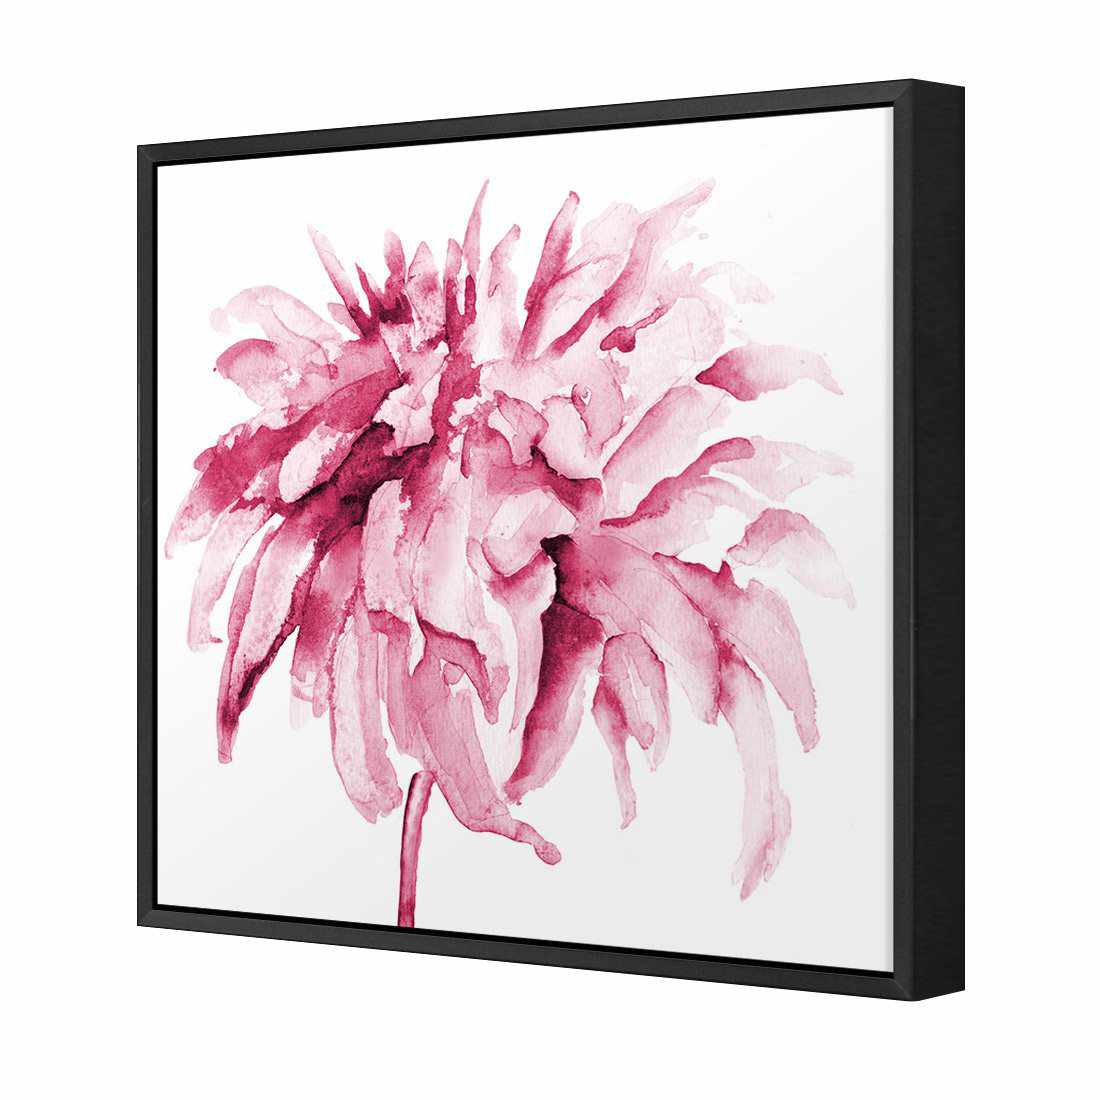 Fairy Floss, Pink Canvas Art-Canvas-Wall Art Designs-30x30cm-Canvas - Black Frame-Wall Art Designs